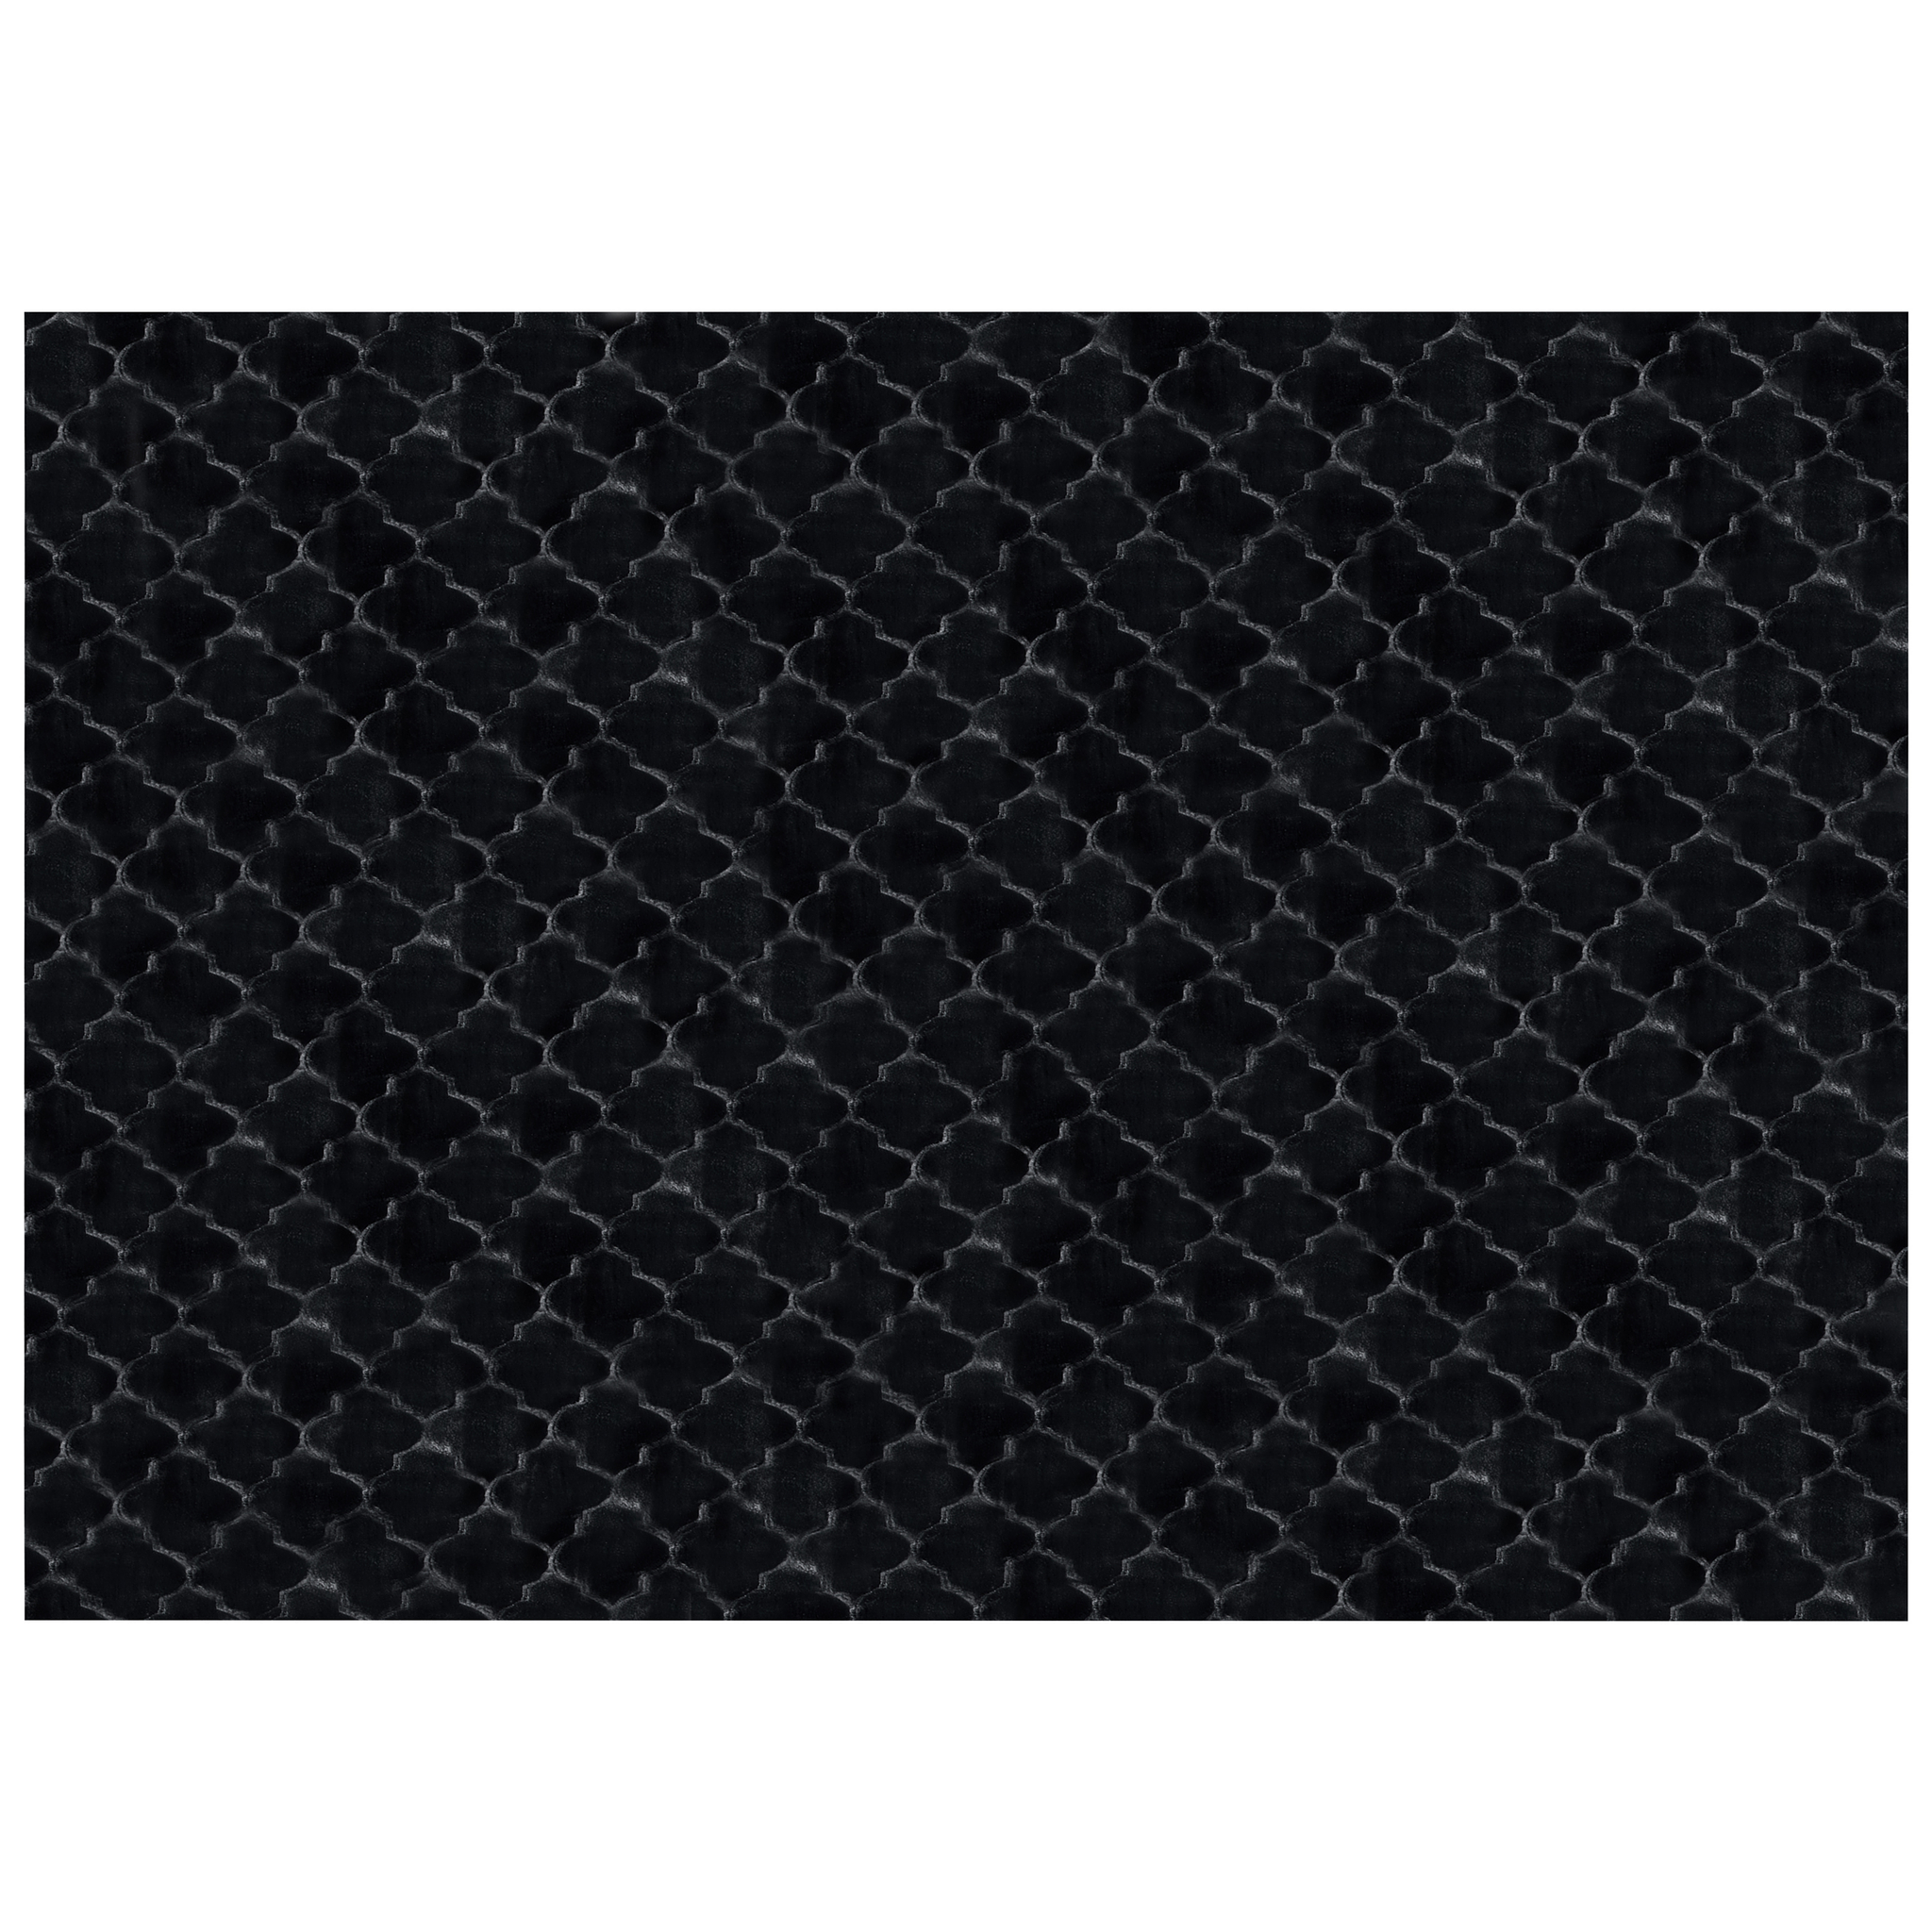 BELIANI Beliani GHARO - Shaggy vloerkleed - Zwart - 160 x 230 cm - Polyester